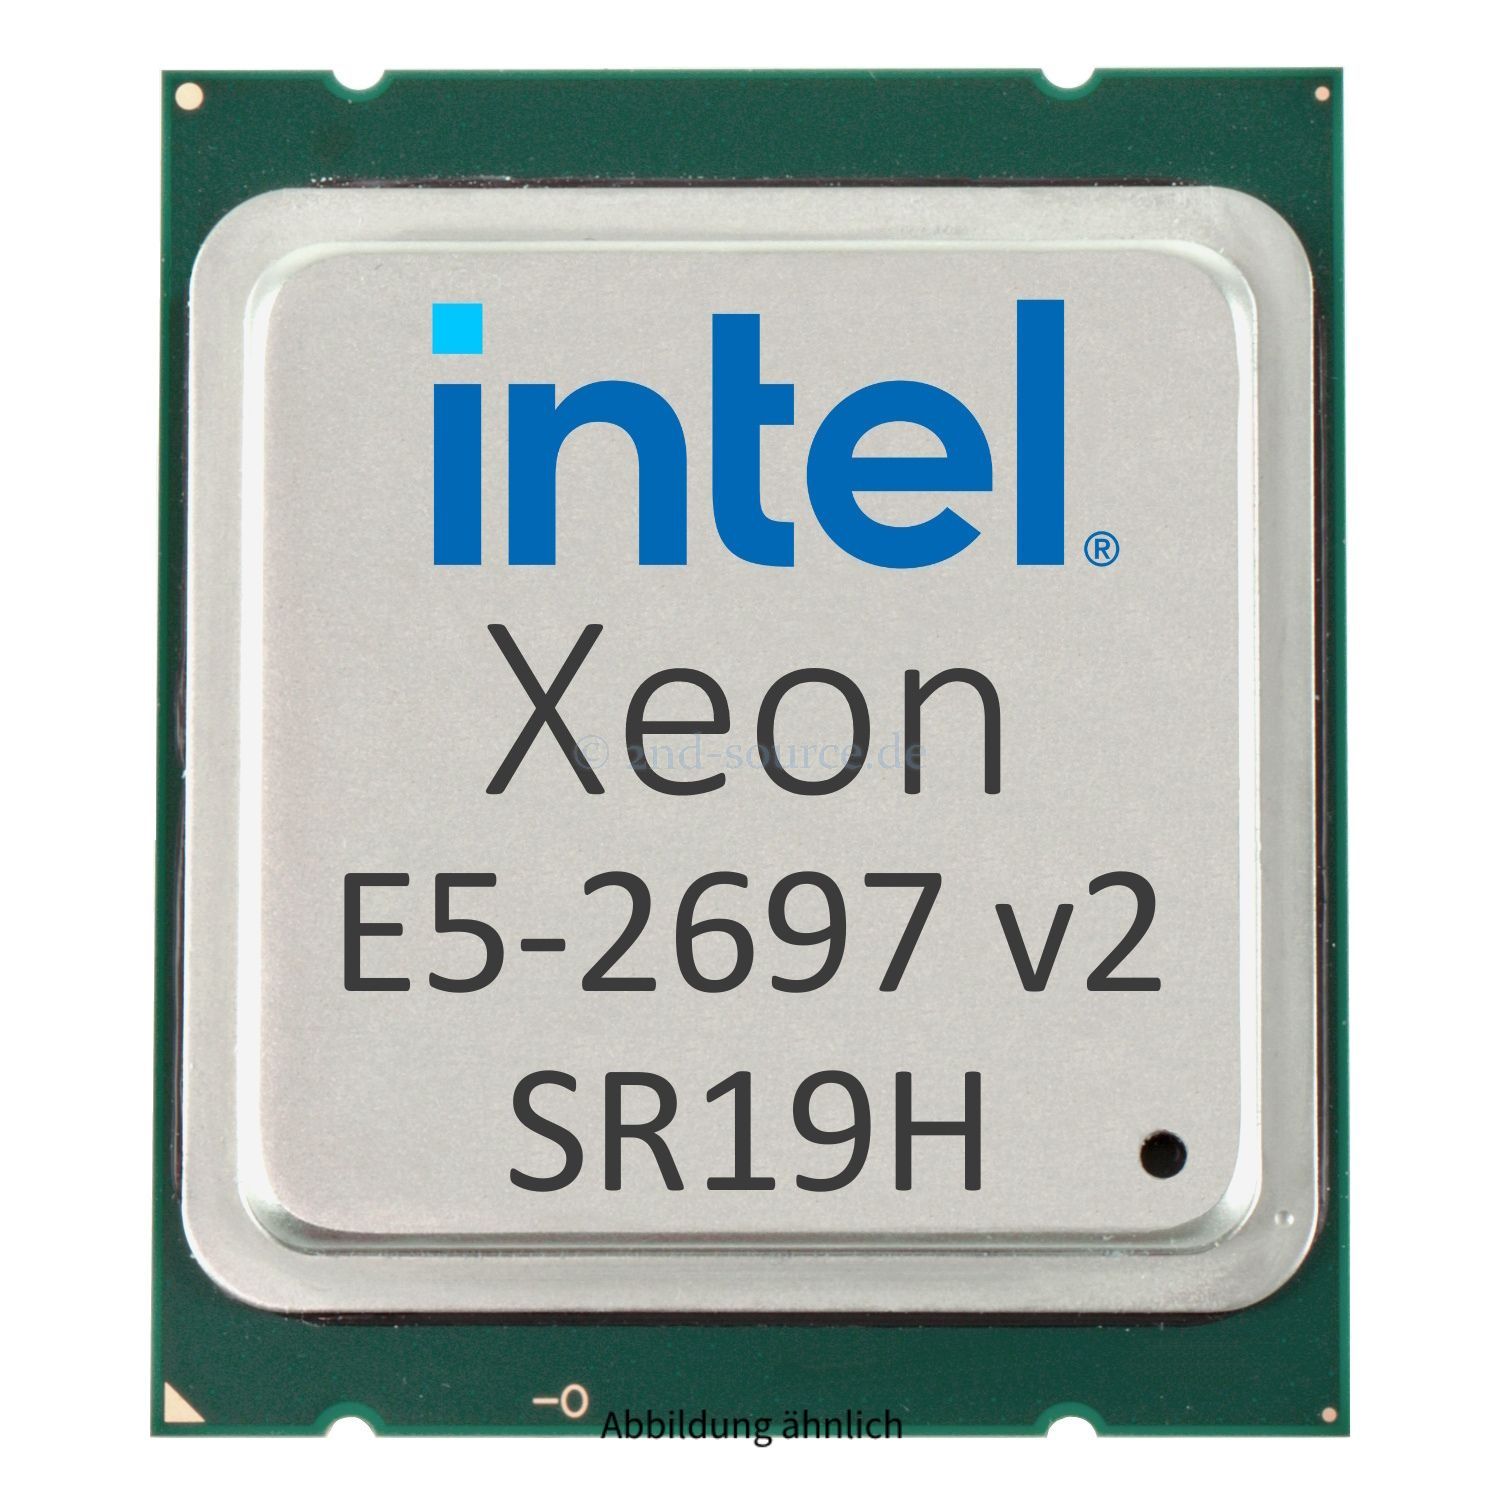 Intel Xeon E5-2697 v2 2.70GHz 30MB 12-Core CPU 130W SR19H CM8063501288843